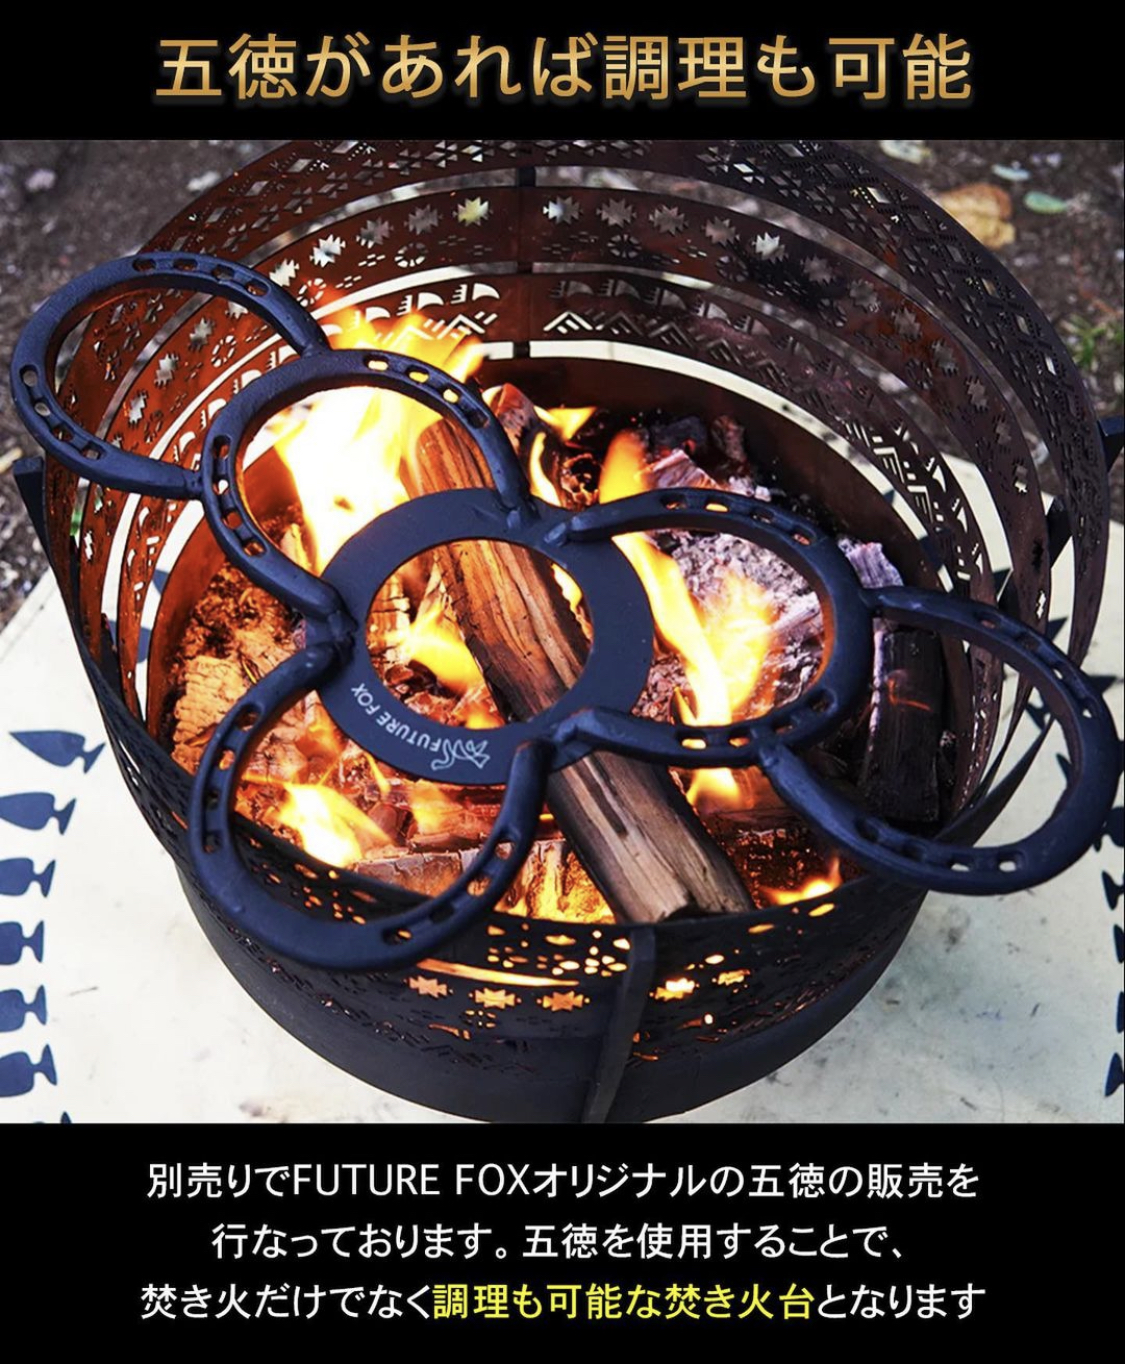 【11月20日発売】FUTURE FOXのナバホ柄焚き火台の進化系「組み立て式ナバホ柄焚き火台」 | えふだぶworksのサバイバルブログ